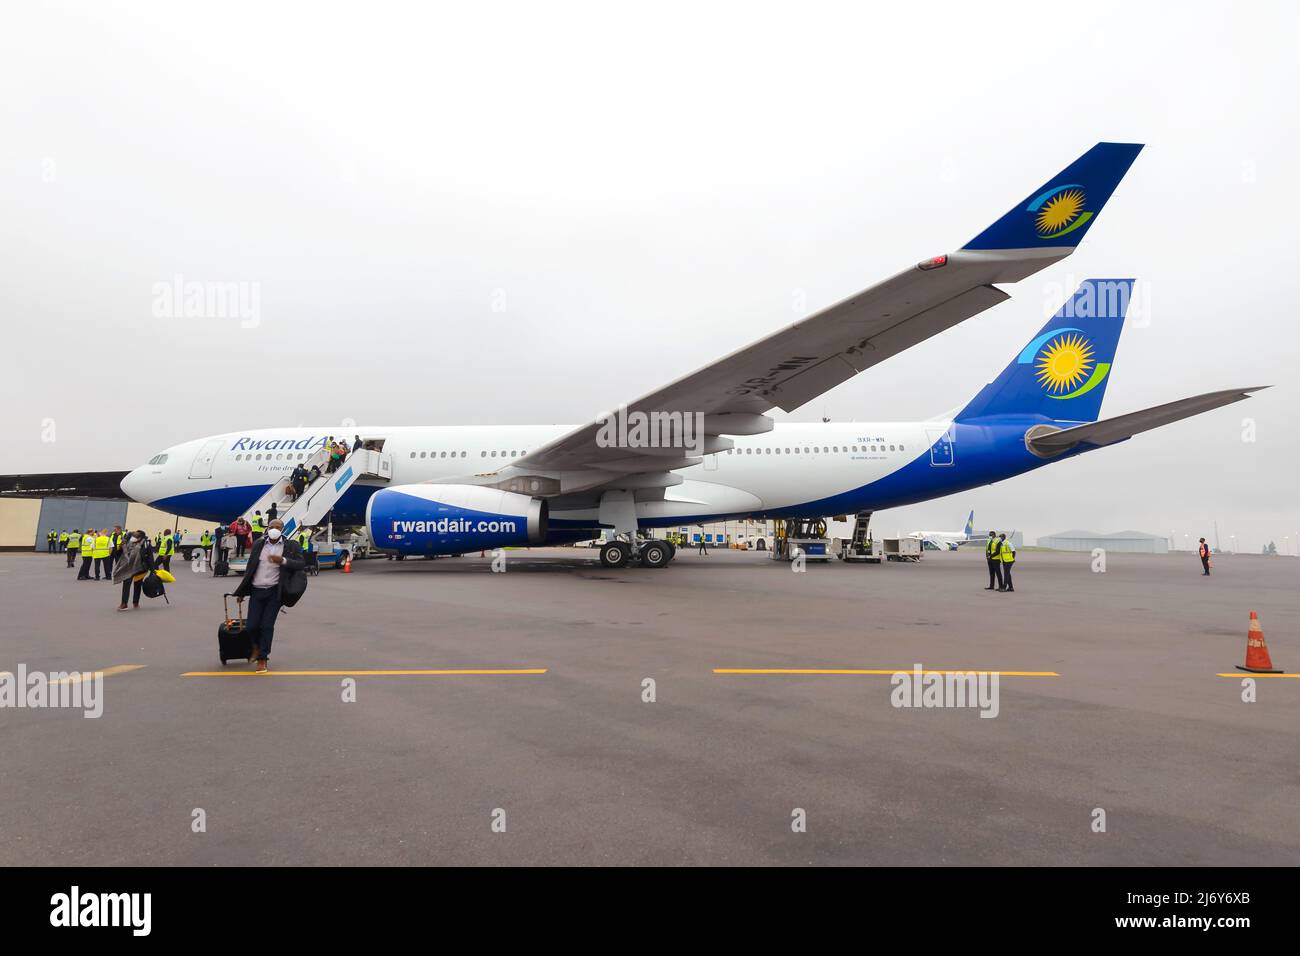 Ruandair Airbus A330-Flugzeug am Flughafen Kigali mit Passagieren, die in Ruanda landen. Flugzeug von Ruandair A330-200. Passagiere, die aus dem Flugzeug laufen. Stockfoto